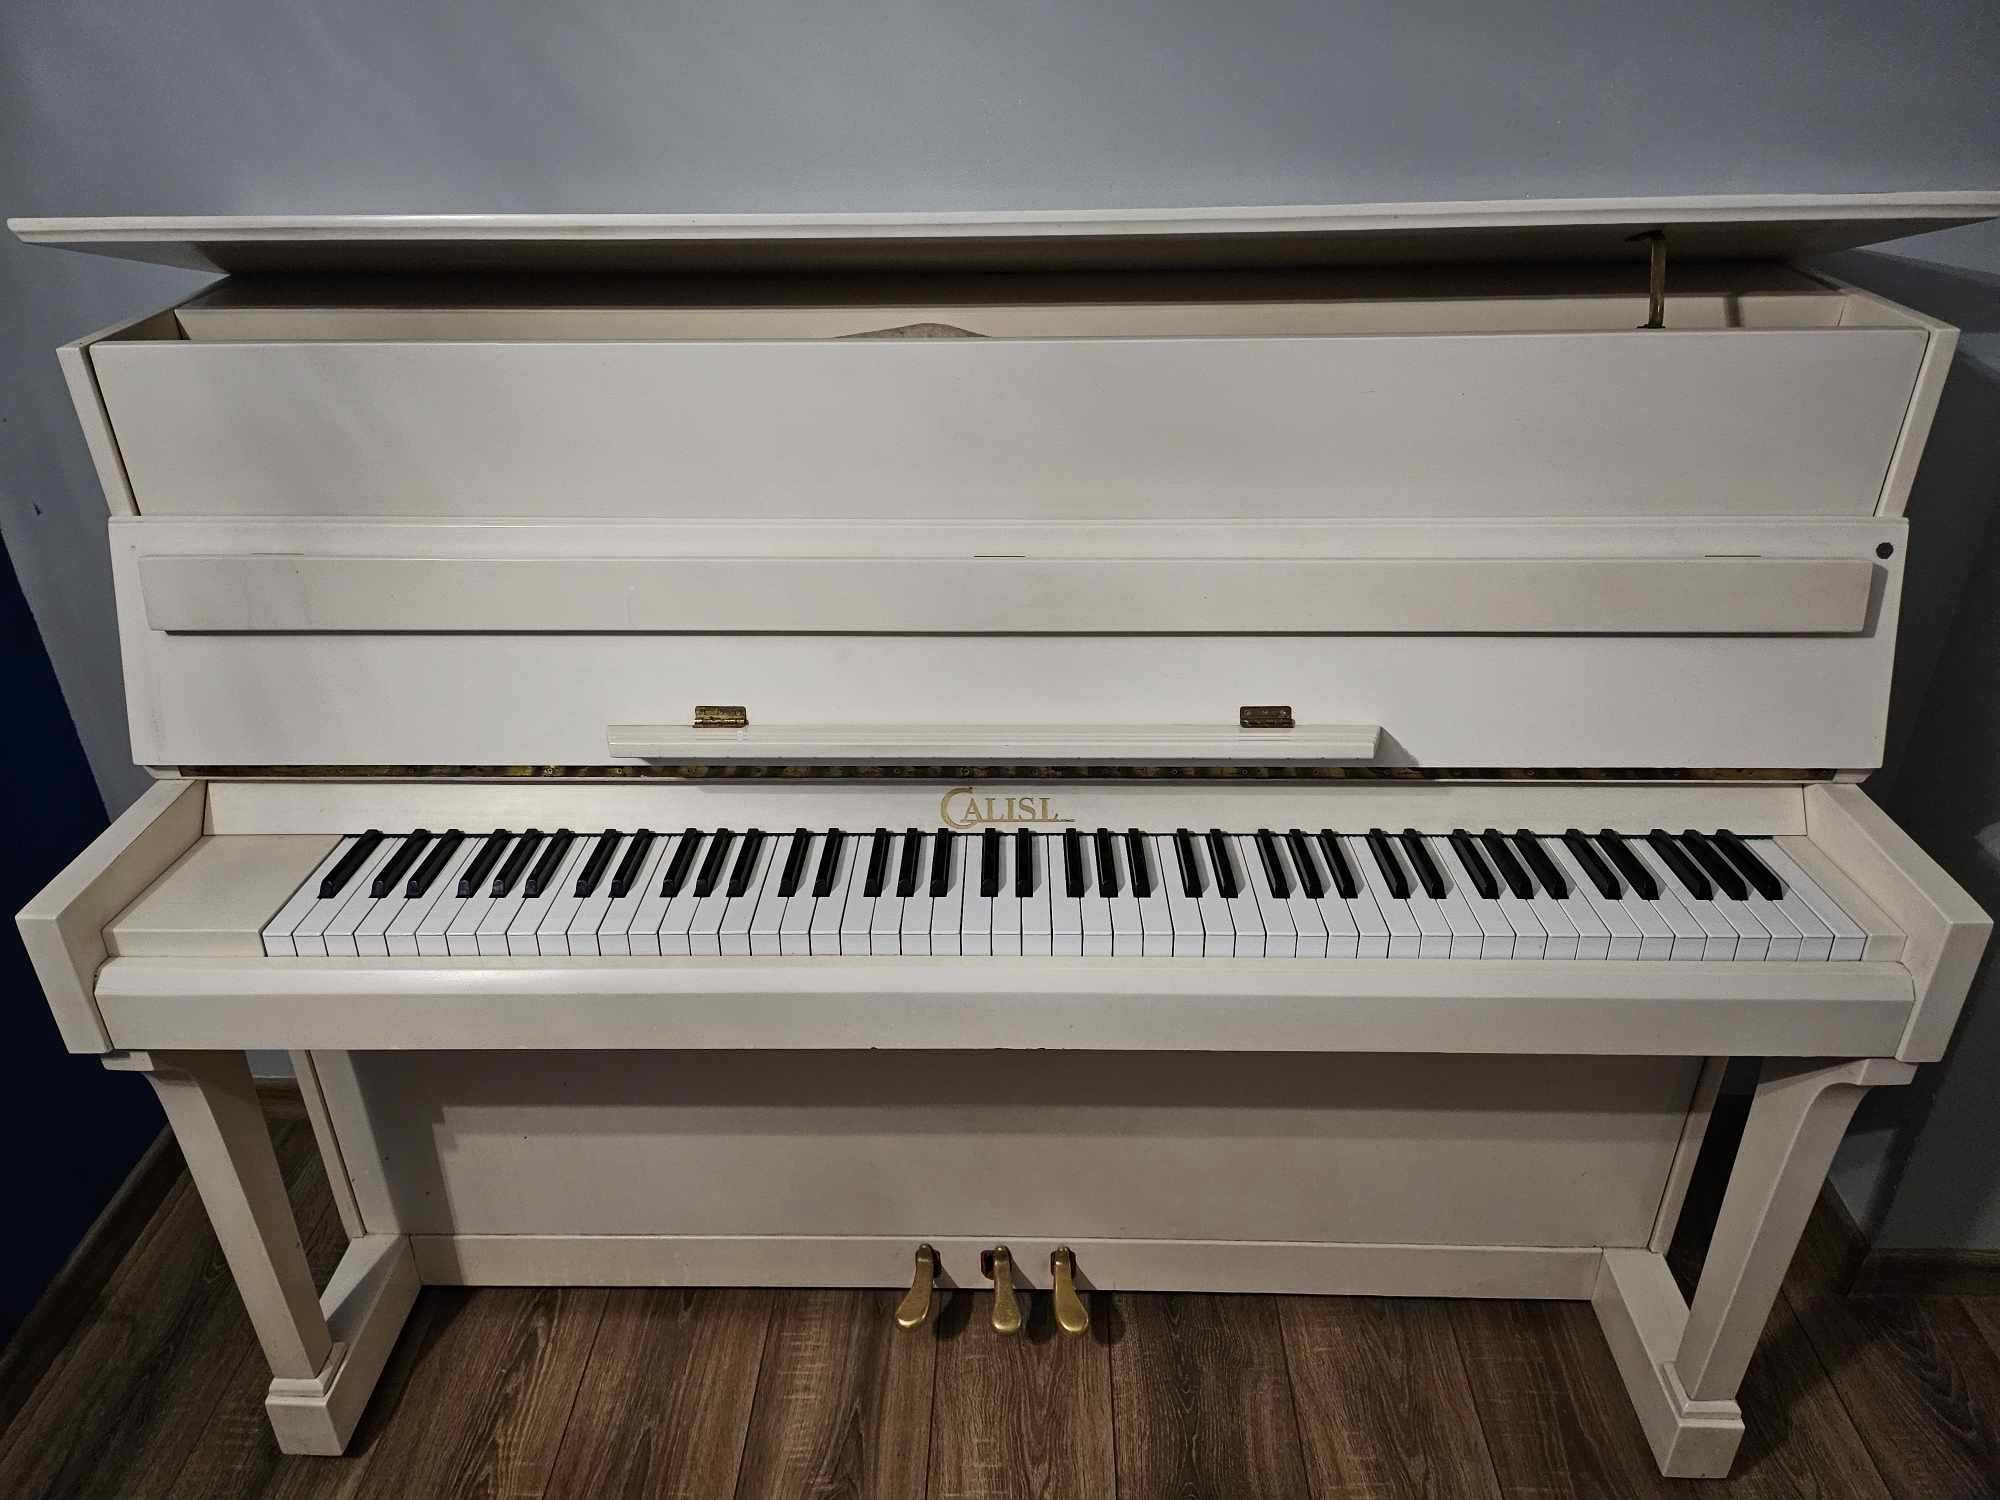 Białe Pianino Polskiej marki Calisia - najwyższy model M-122 Rapsodia